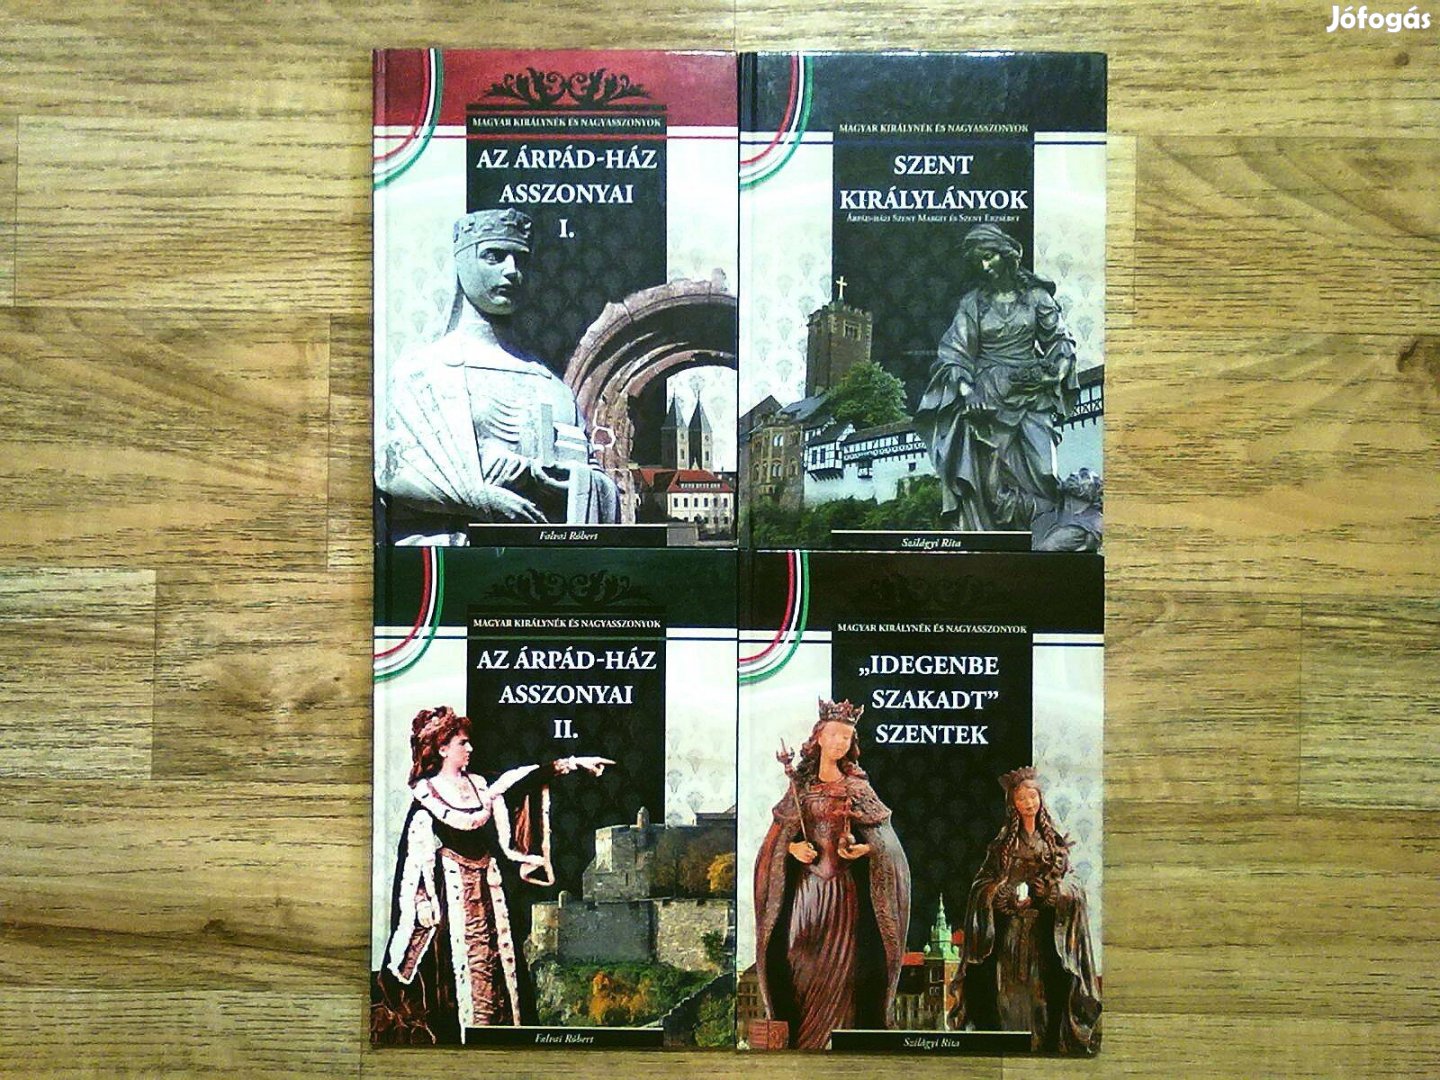 Magyar királynék és nagyasszonyok sorozat 4 kötete egy csomagban